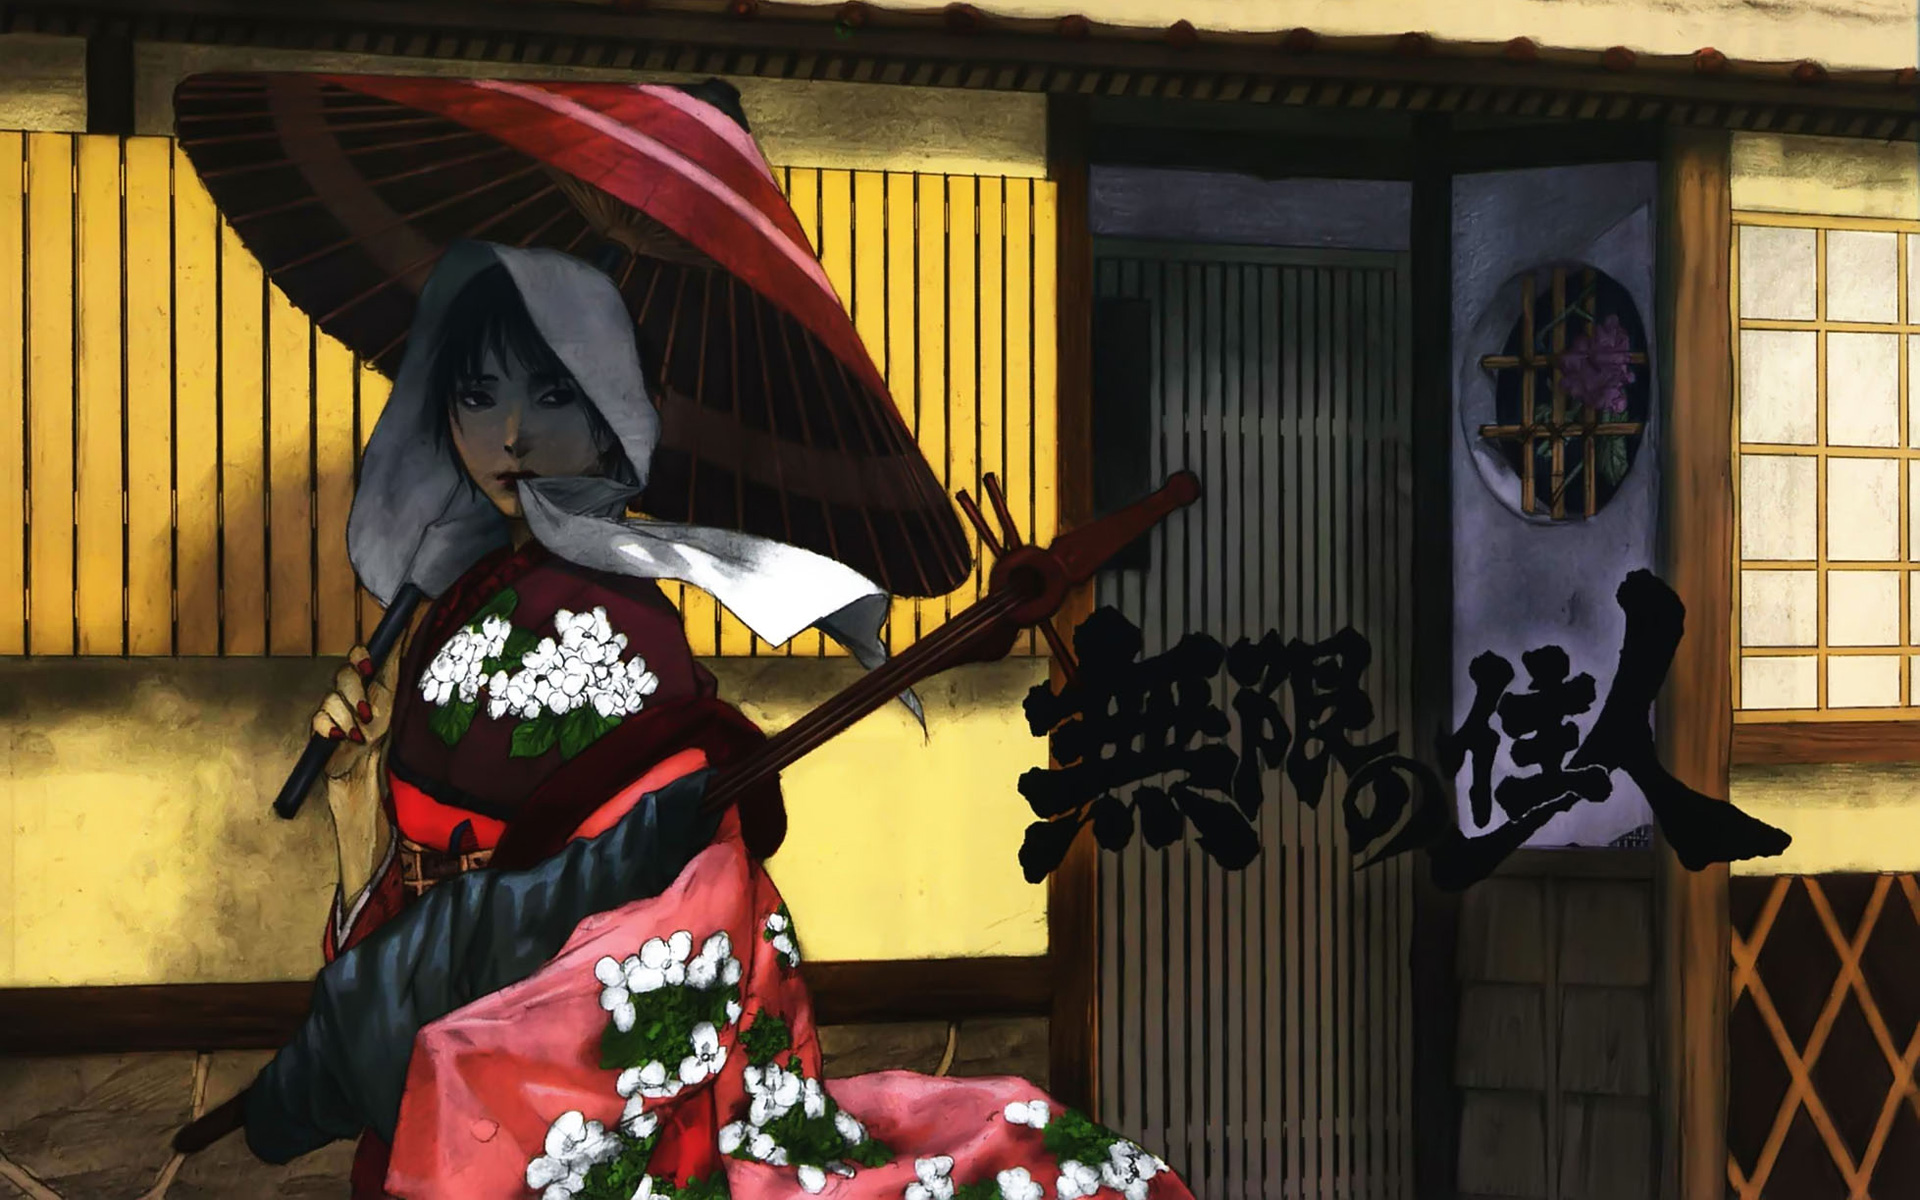 anime girls - desktop wallpaper